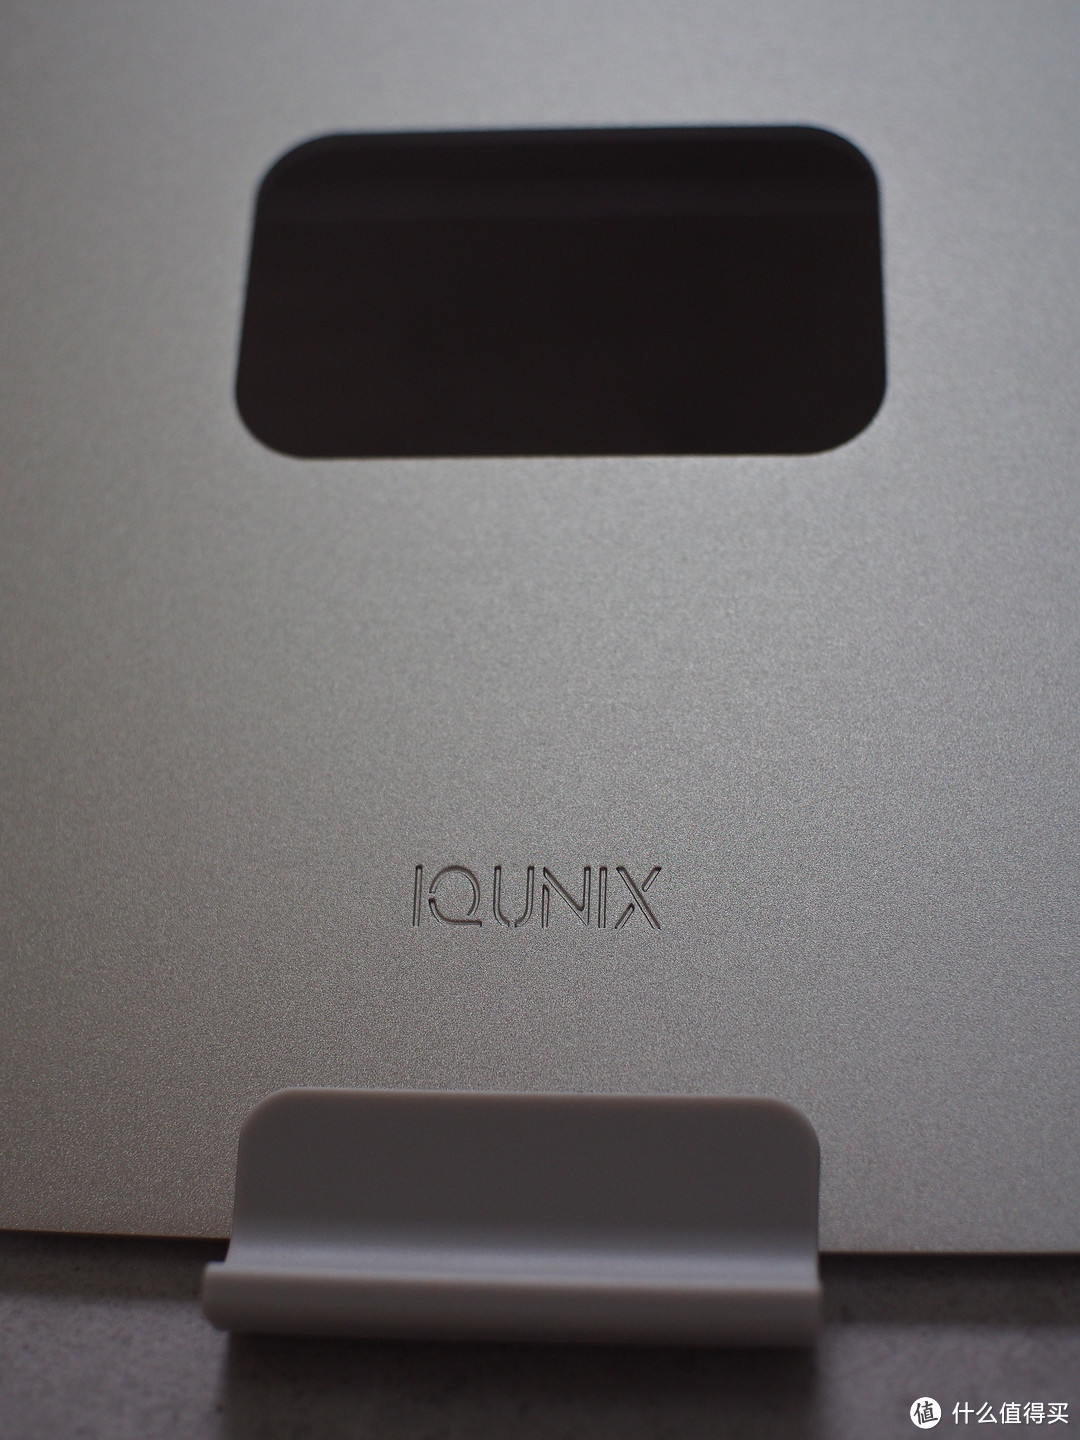 给你一个简洁的桌面——来自iQunix笔记本支架